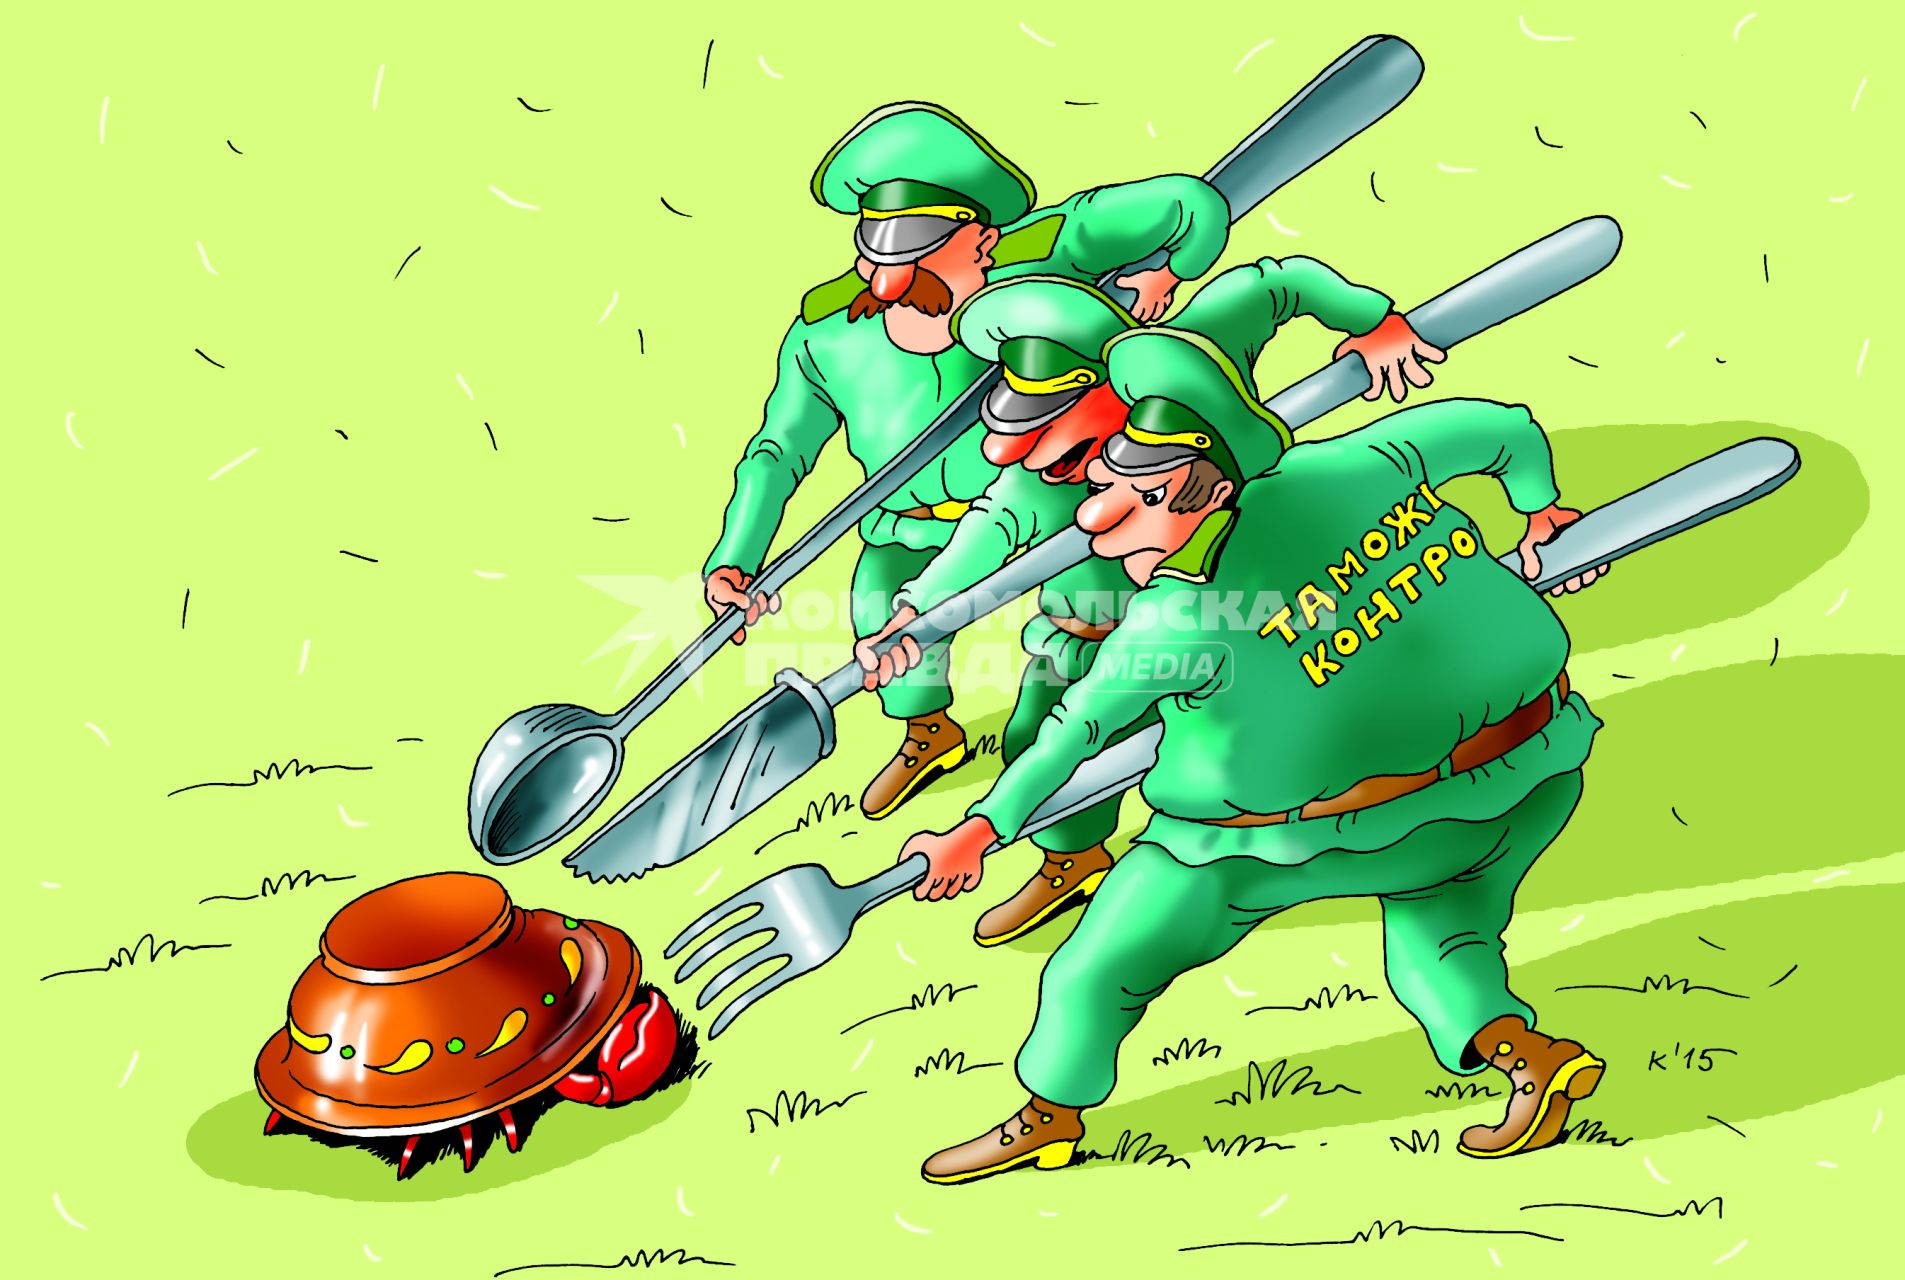 Карикатура на тему таможенного контроля.